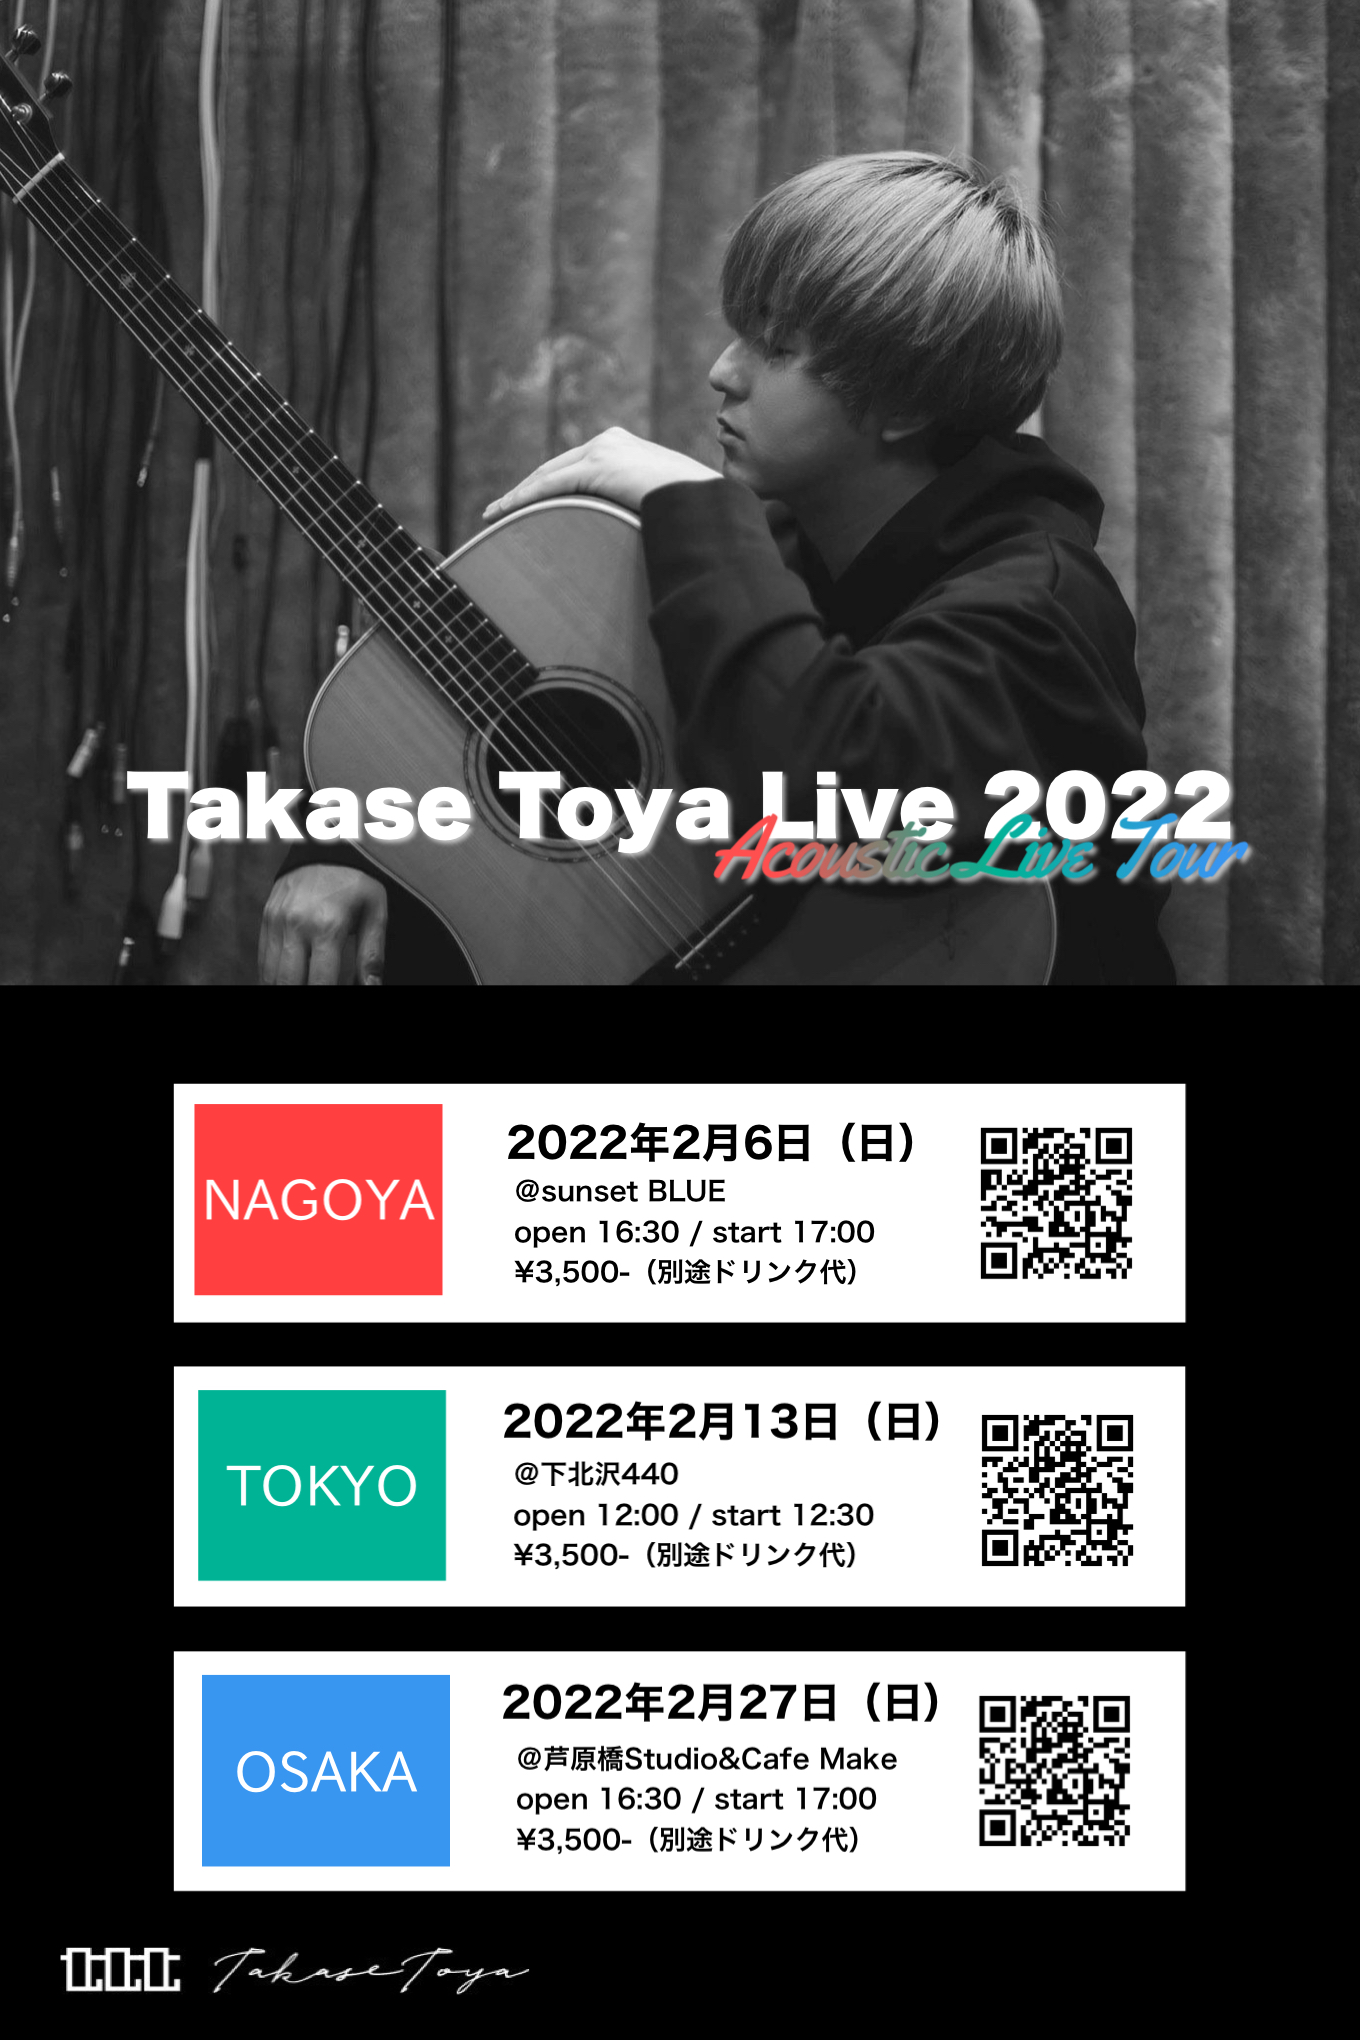 Takase Toya Live 2022【OSAKA】一般